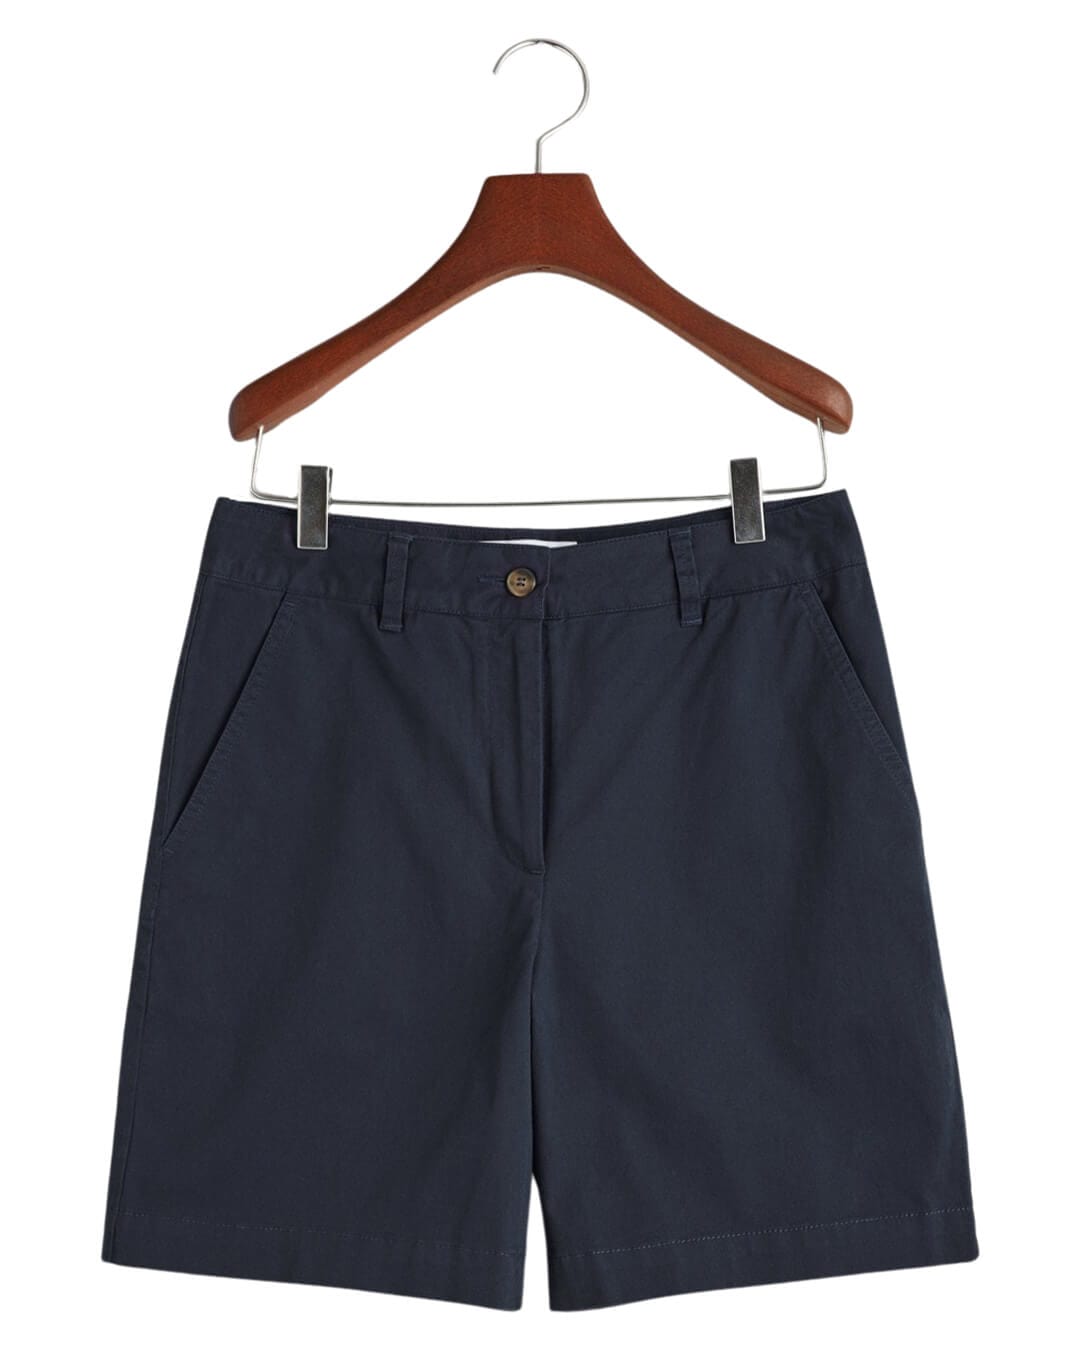 Gant Shorts Gant Navy Classic Chino Shorts